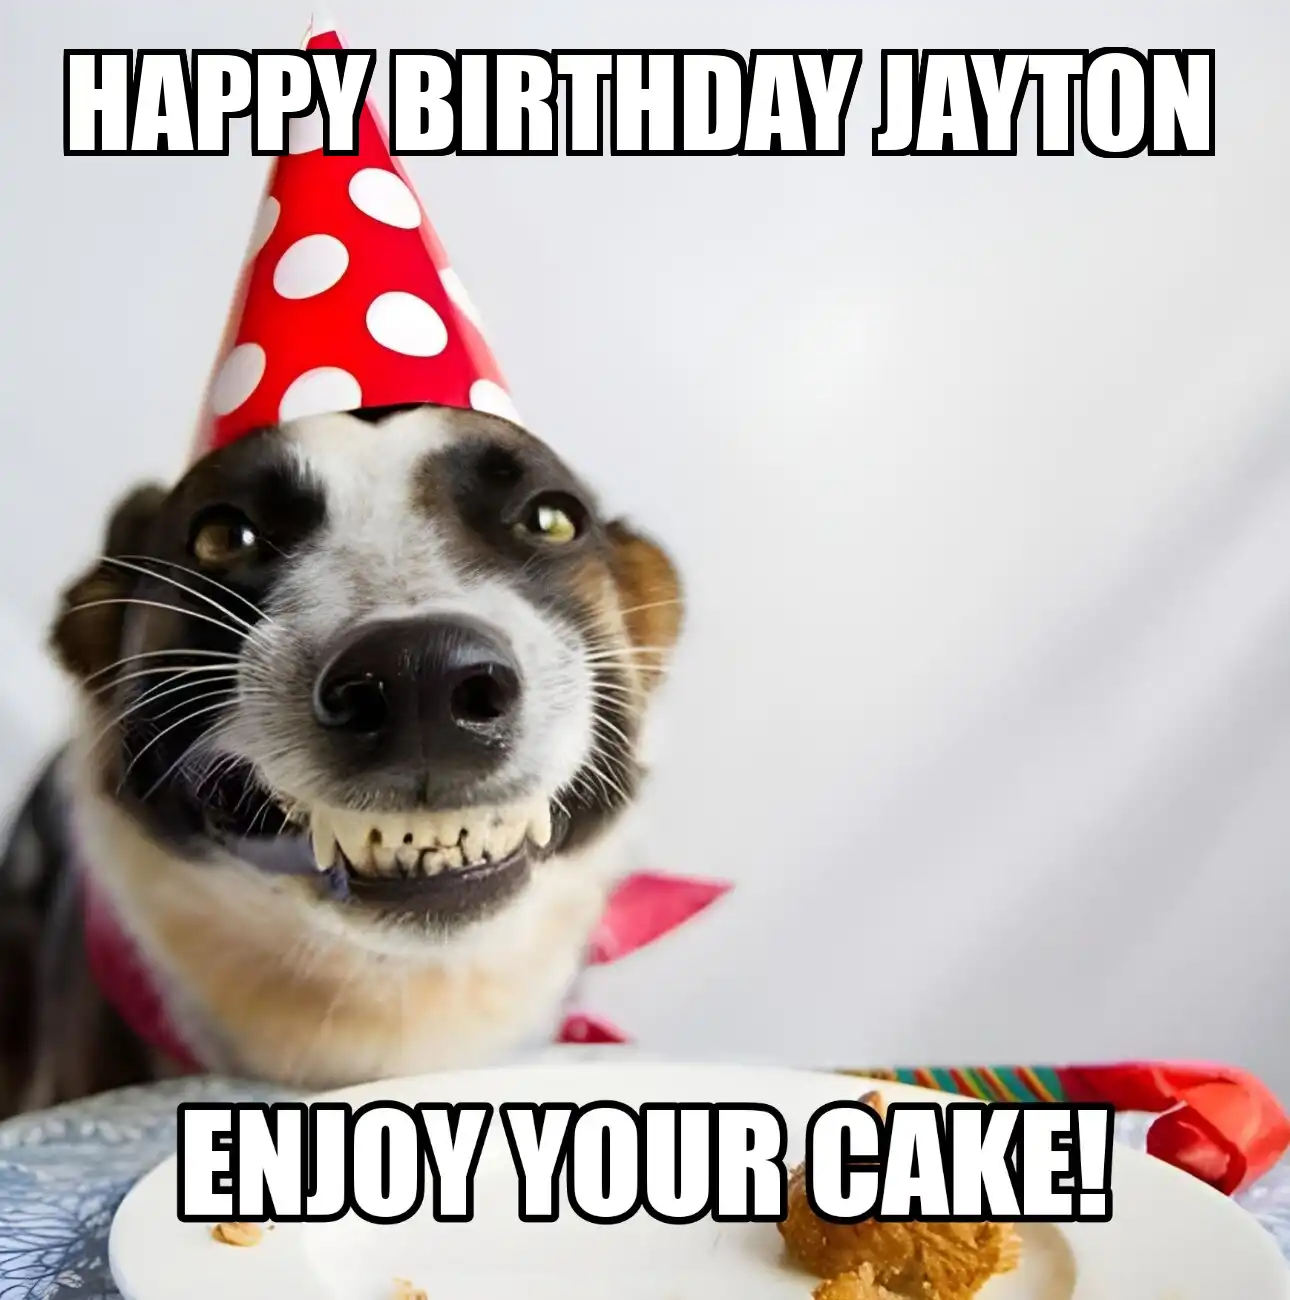 Happy Birthday Jayton Enjoy Your Cake Dog Meme